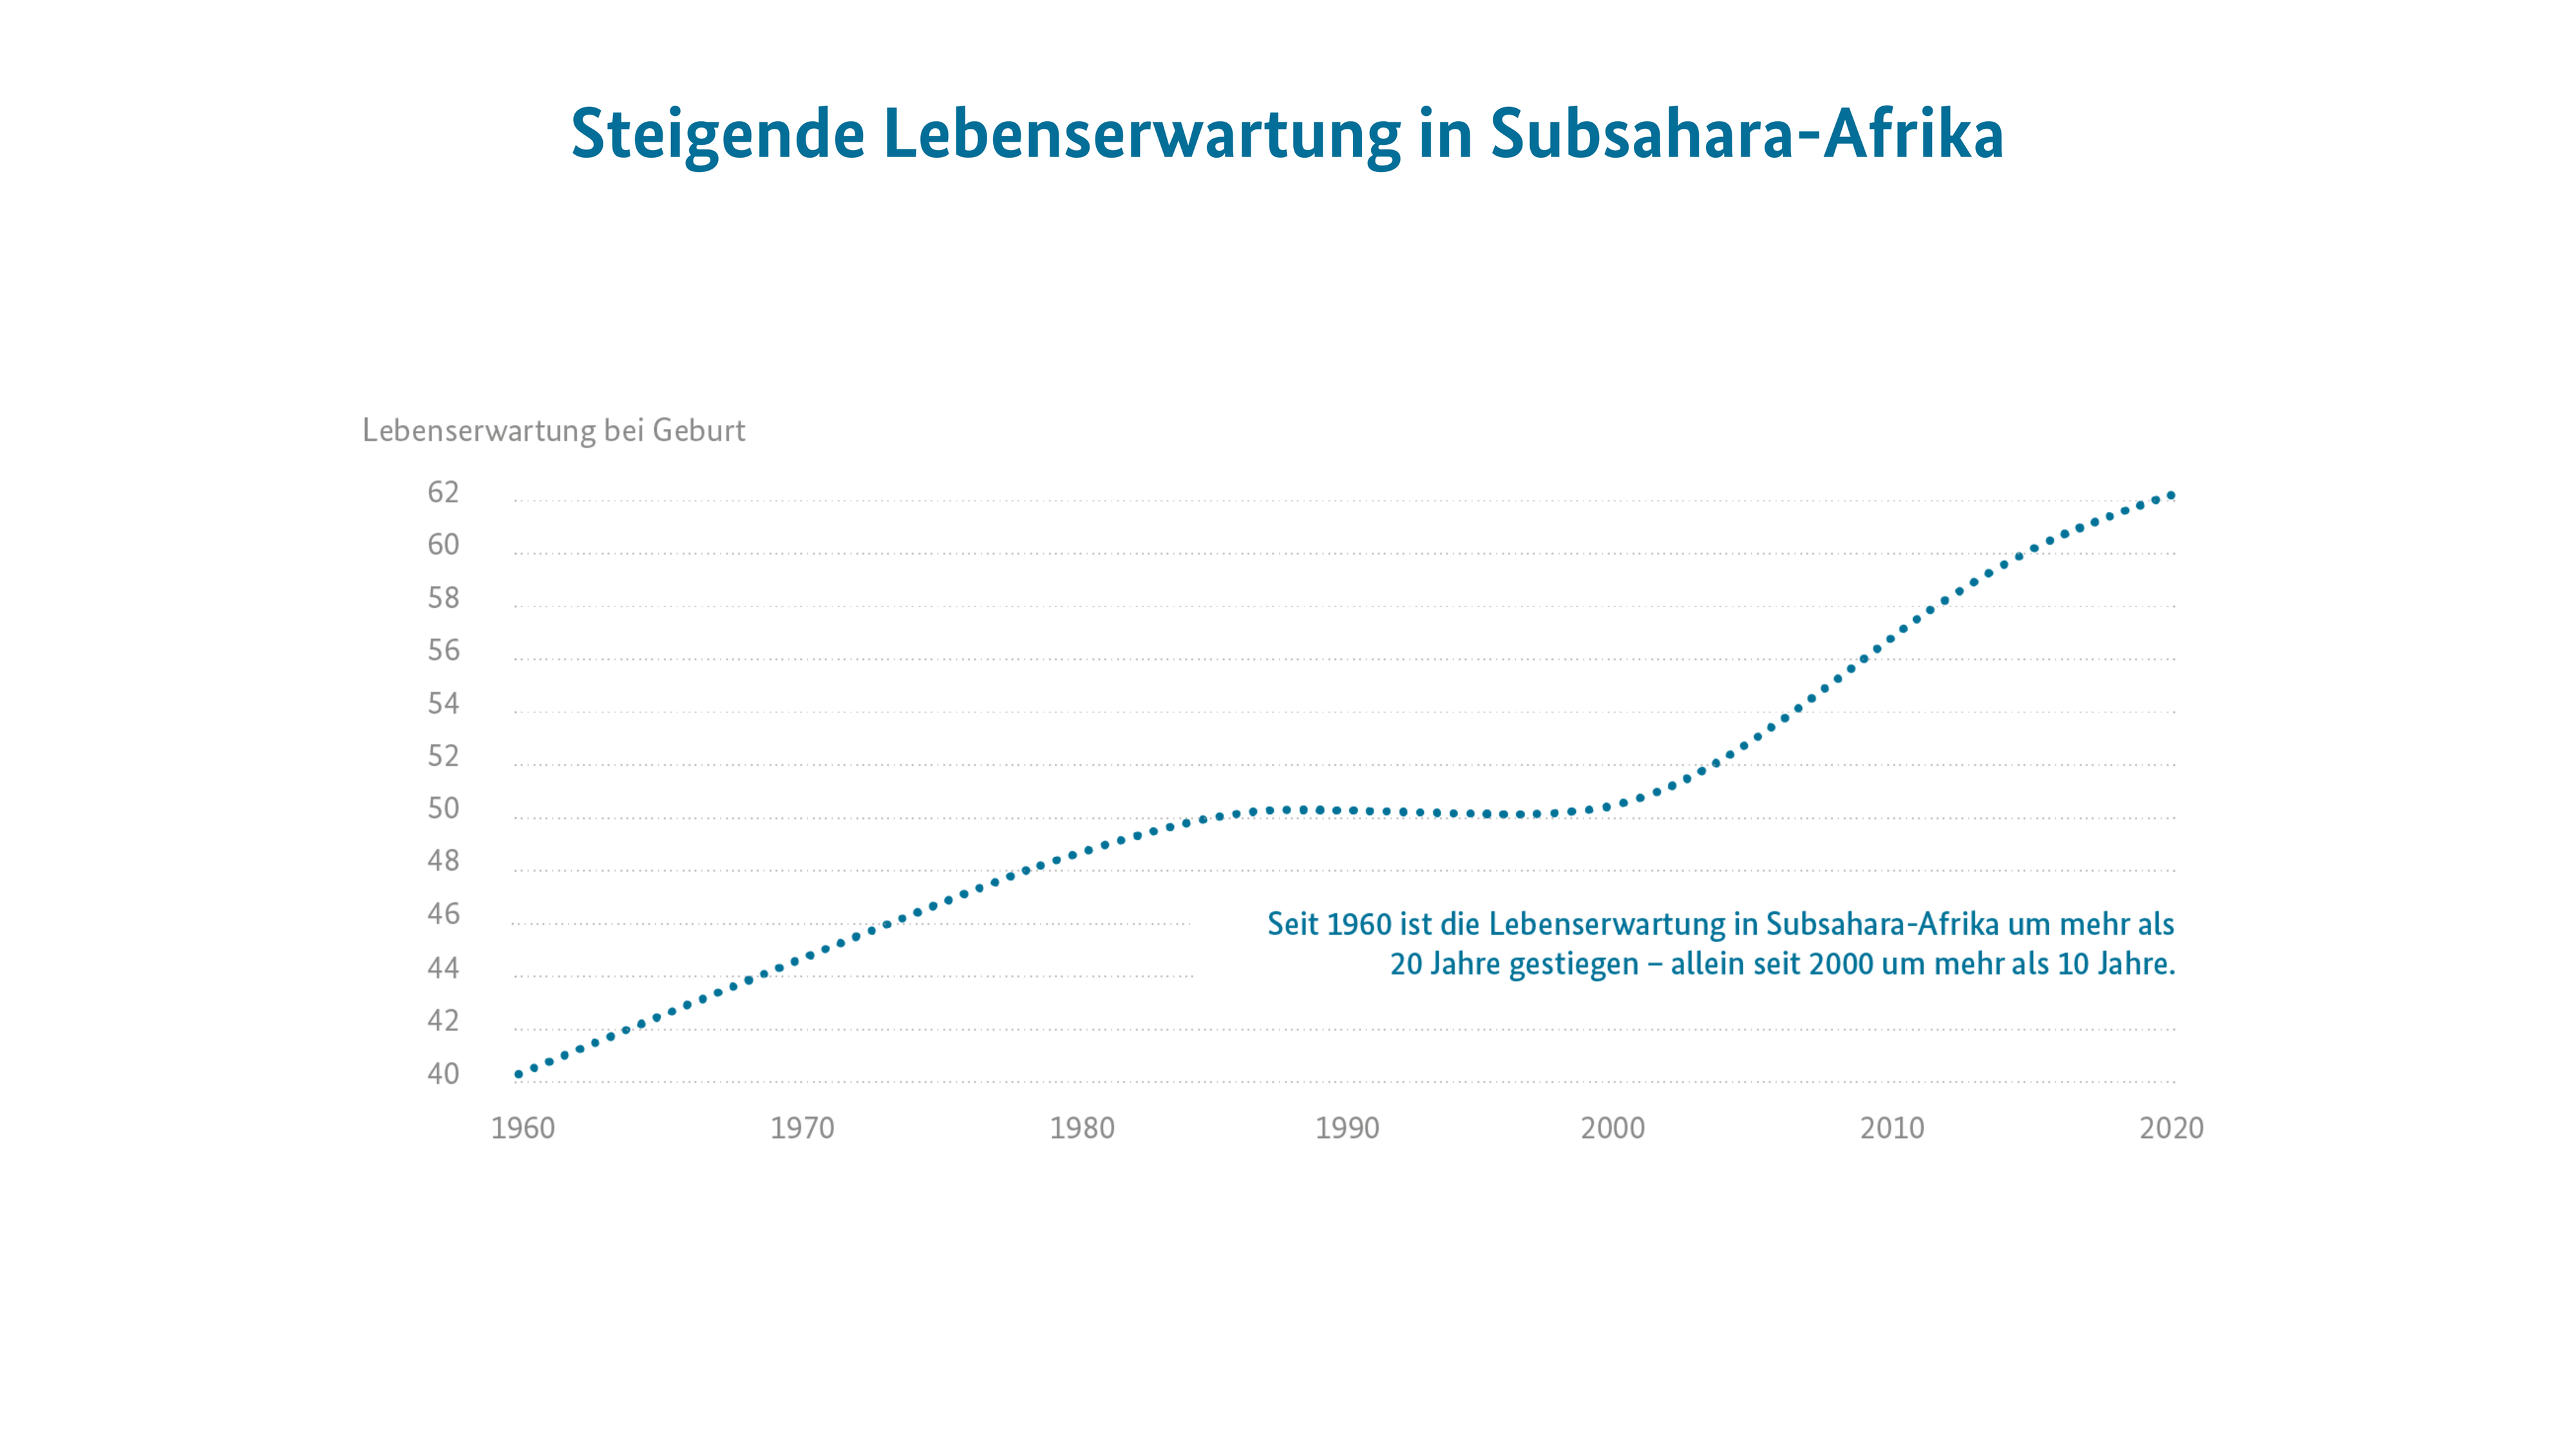 Steigende Lebenserwartung in Subsahara-Afrika: Seit 1960 ist die Lebenserwartung in Subsahara-Afrika um mehr als 20 Jahre gestiegen – allein seit 2000 um mehr als 10 Jahre.